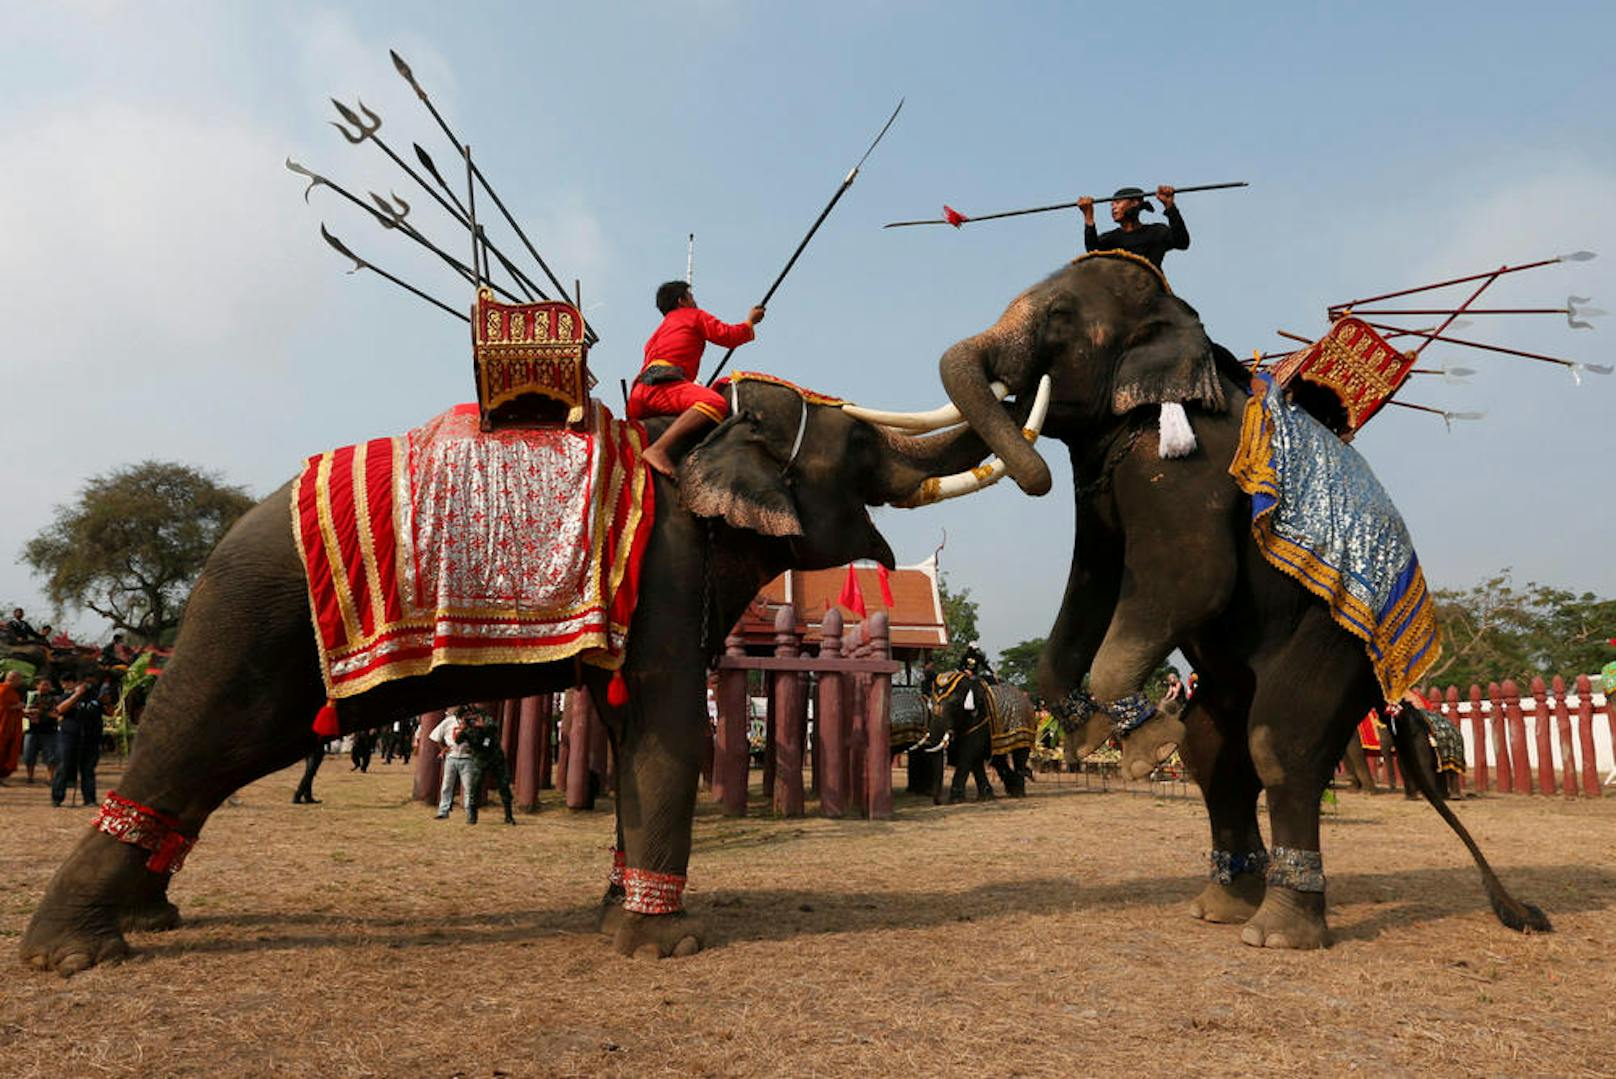 14.03.2017: Elefanten-Kampf in Thailand<br>
Am "National Elephant Day" in Thailand inszenieren Elefanten-Führer in der Stadt Ayutthaya einen Schaukampf.